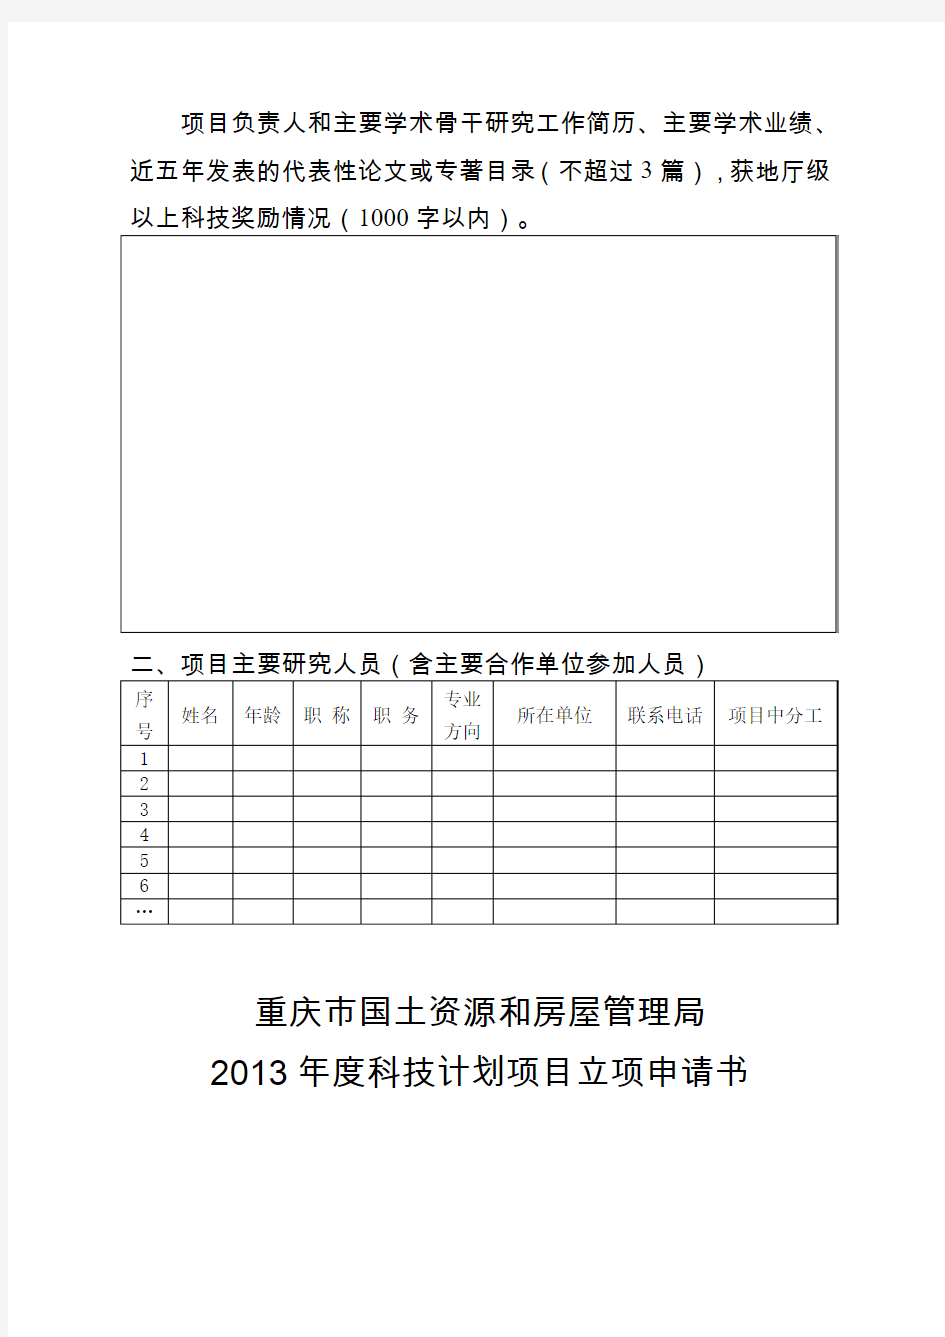 2013年度计划文档 (49)